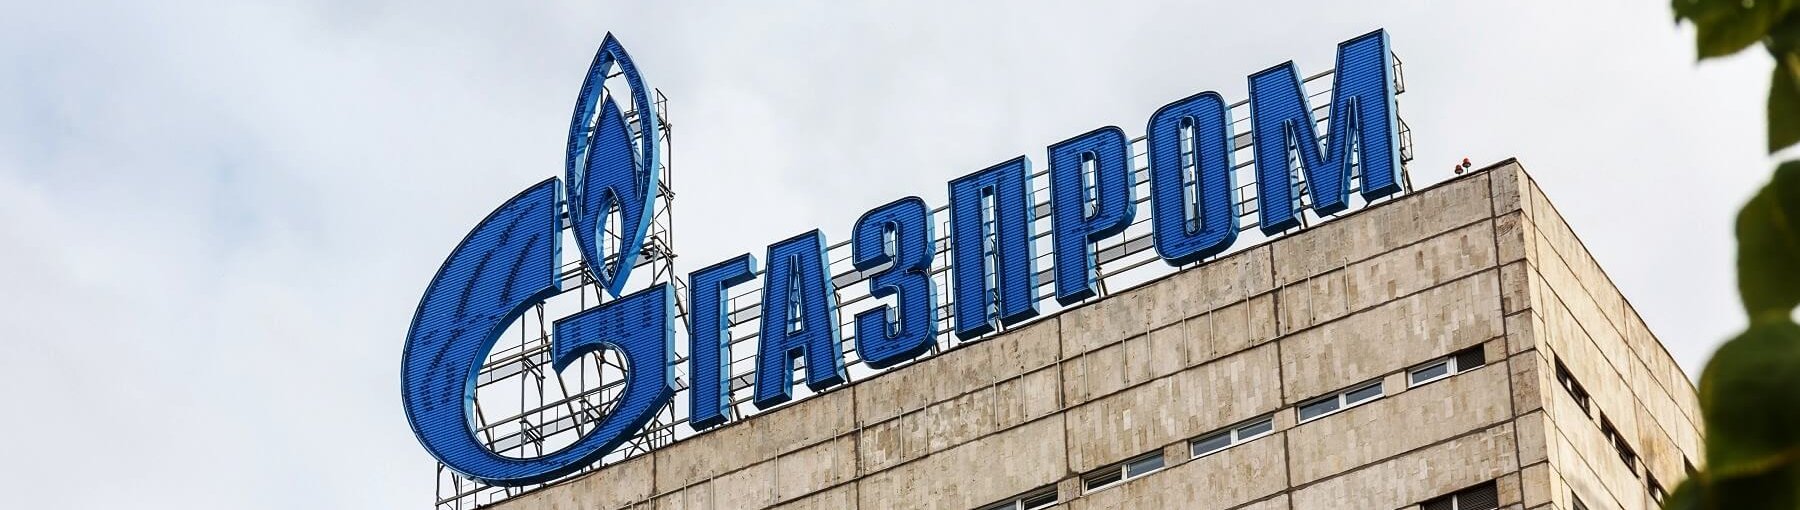 PGNiG–Gazprom – co dalej z kontraktem jamalskim? Fot. Shurchkov/Shutterstock